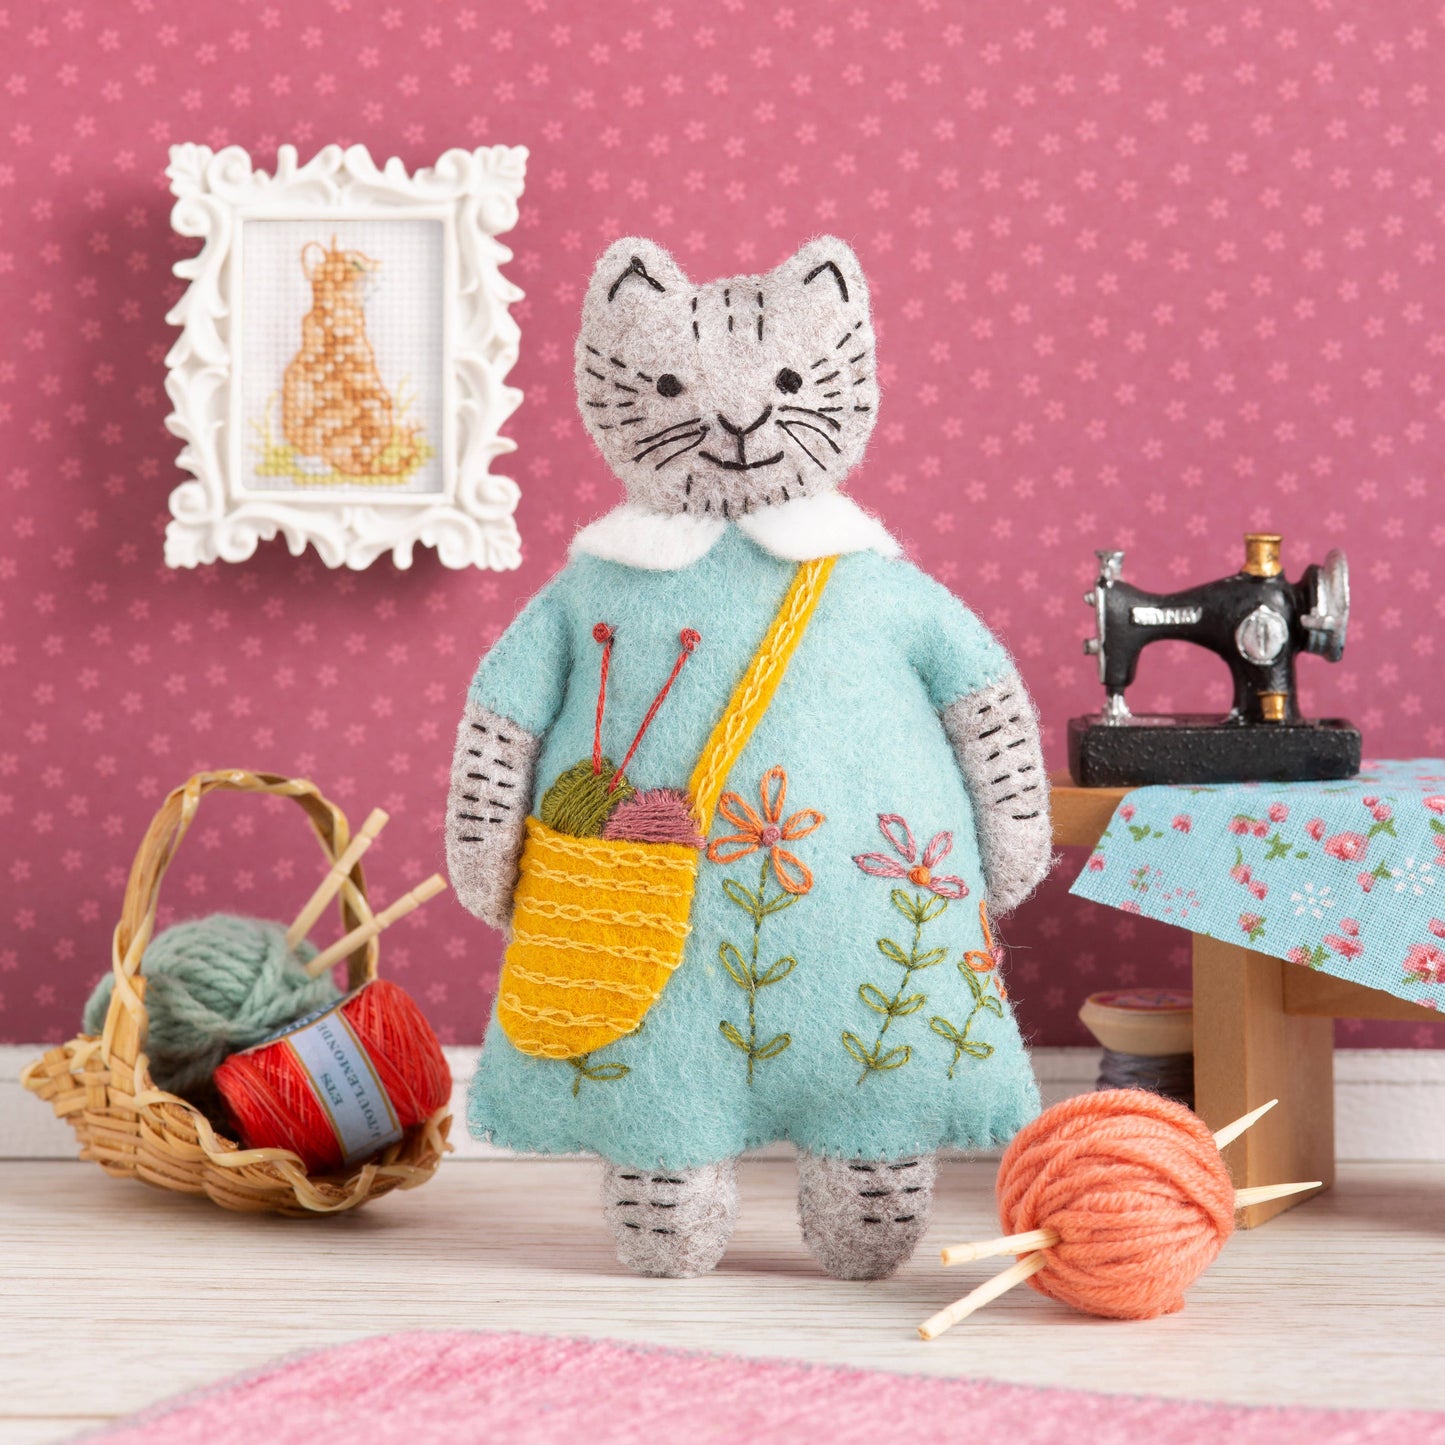 Mrs. Cat Loves Knitting - Felt Craft Mini Kit